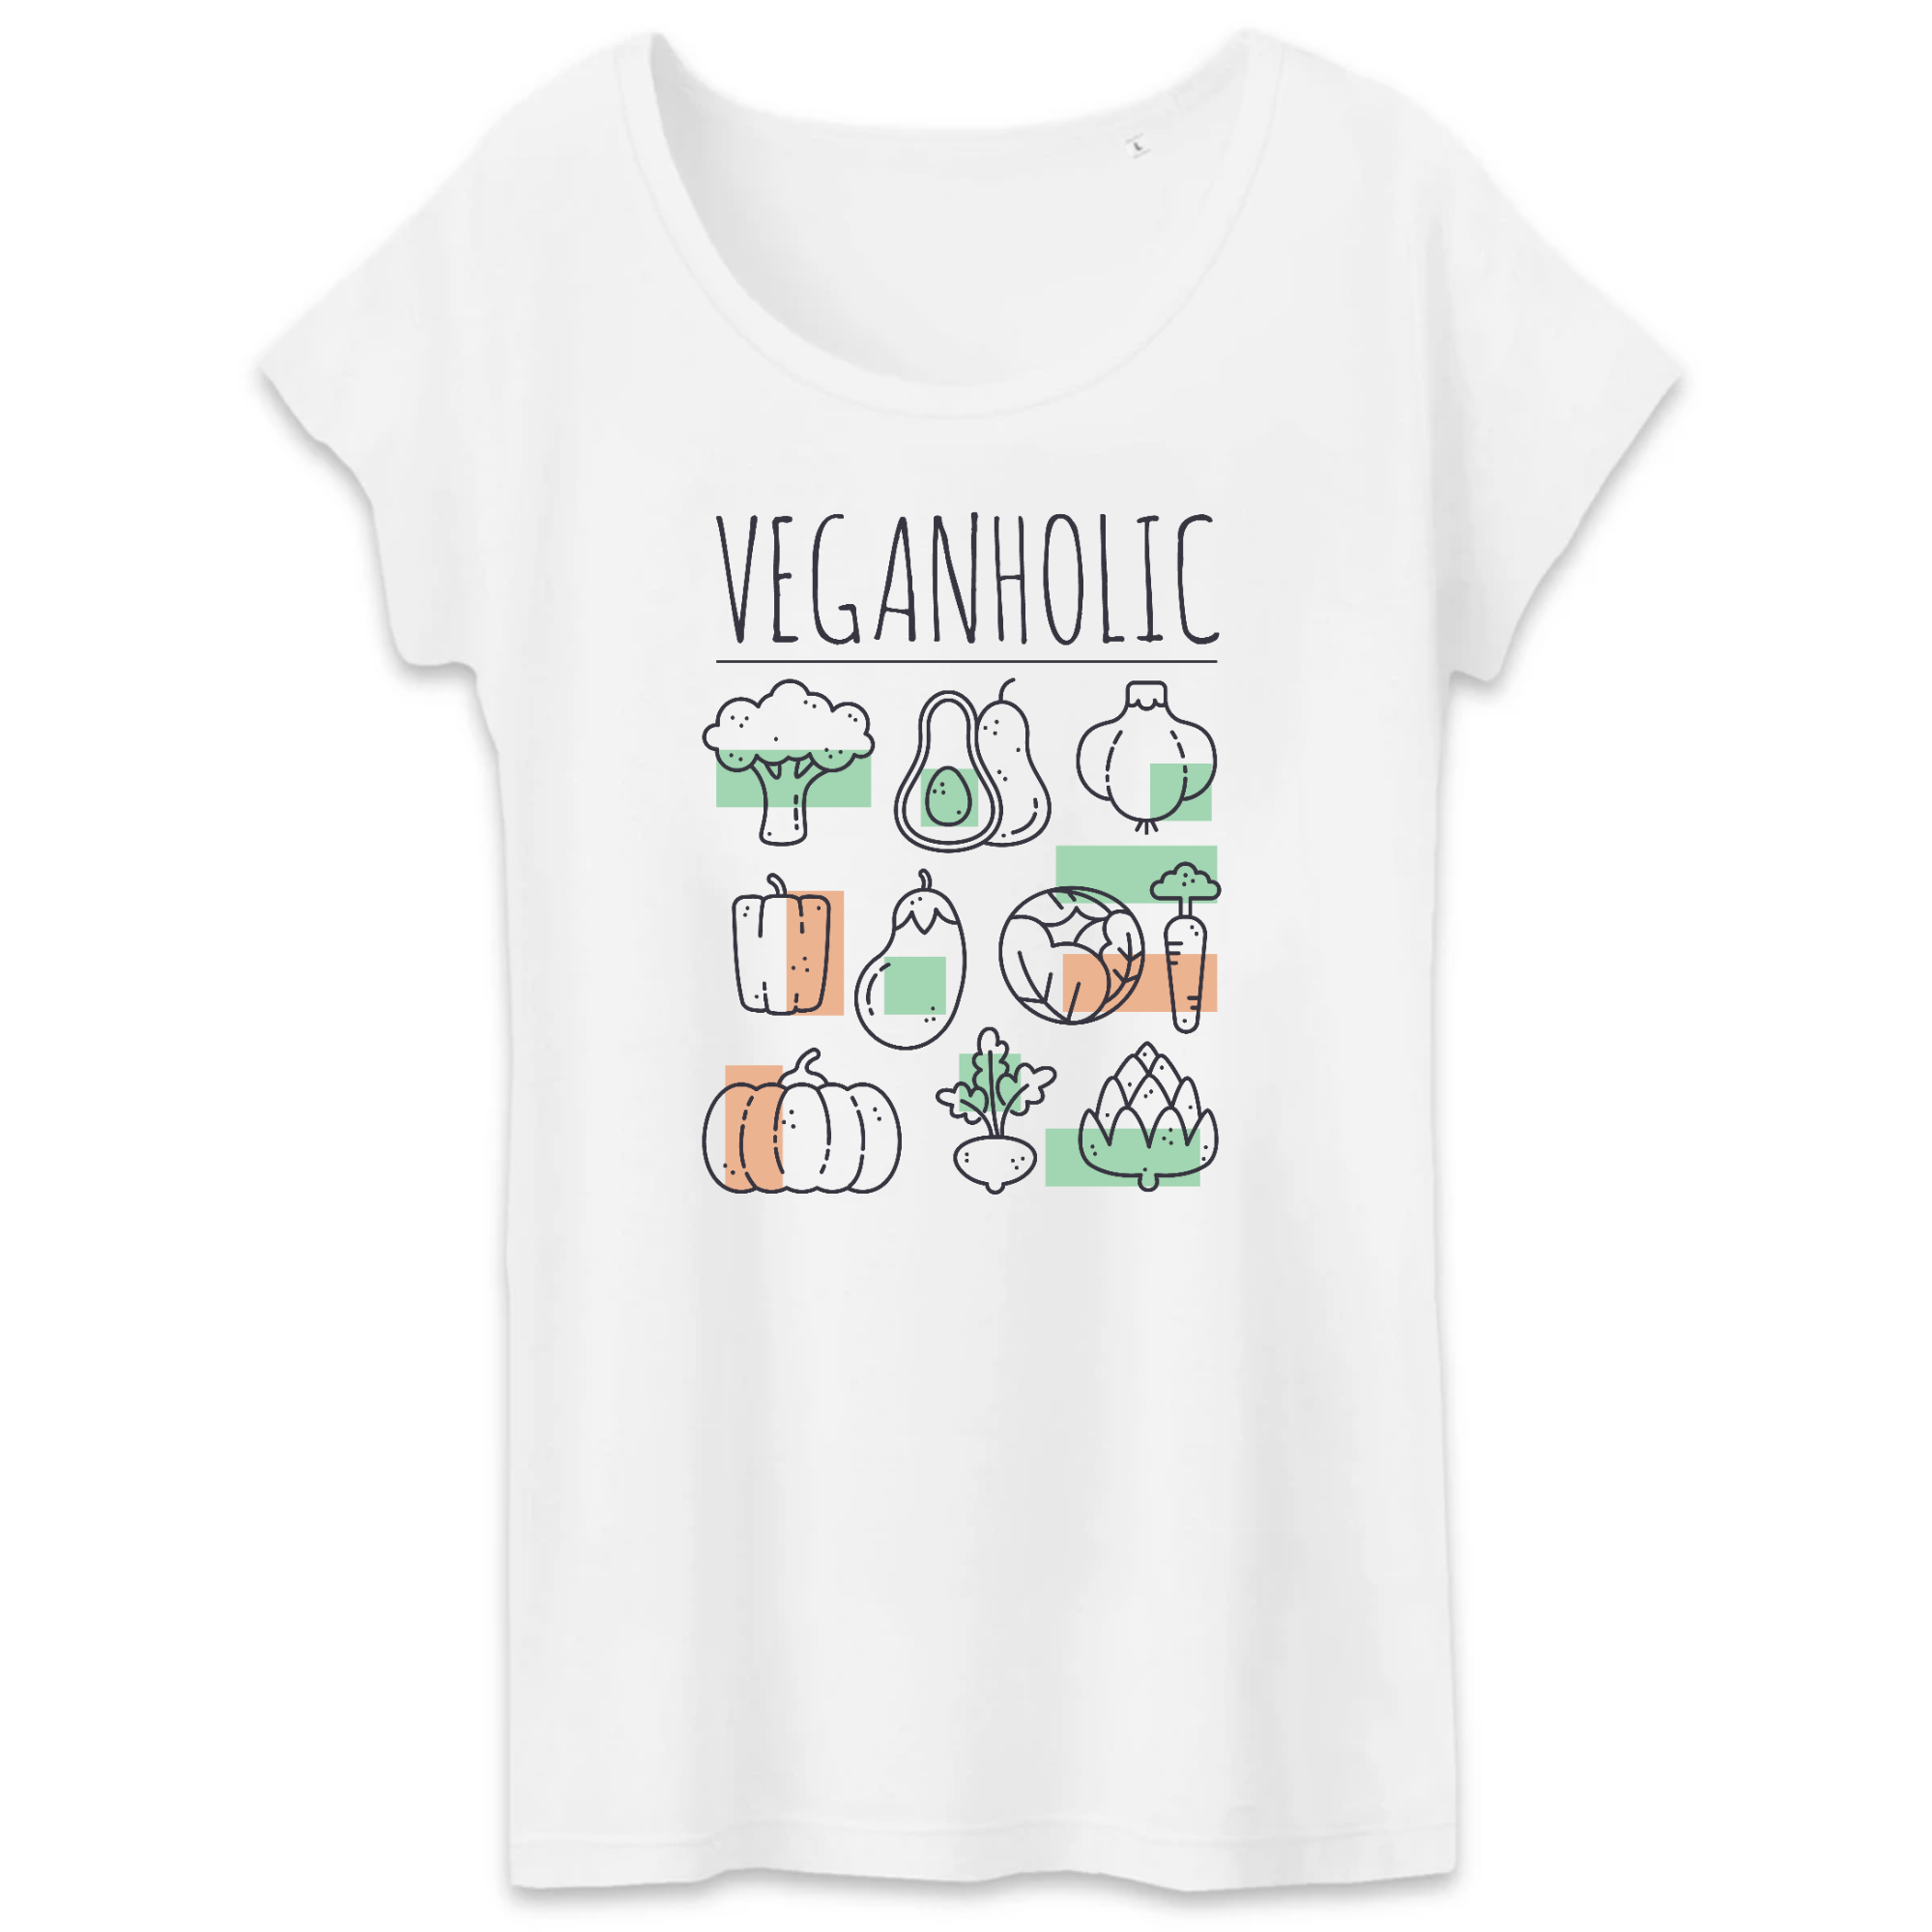 T-shirt organische veganholische vrouwen